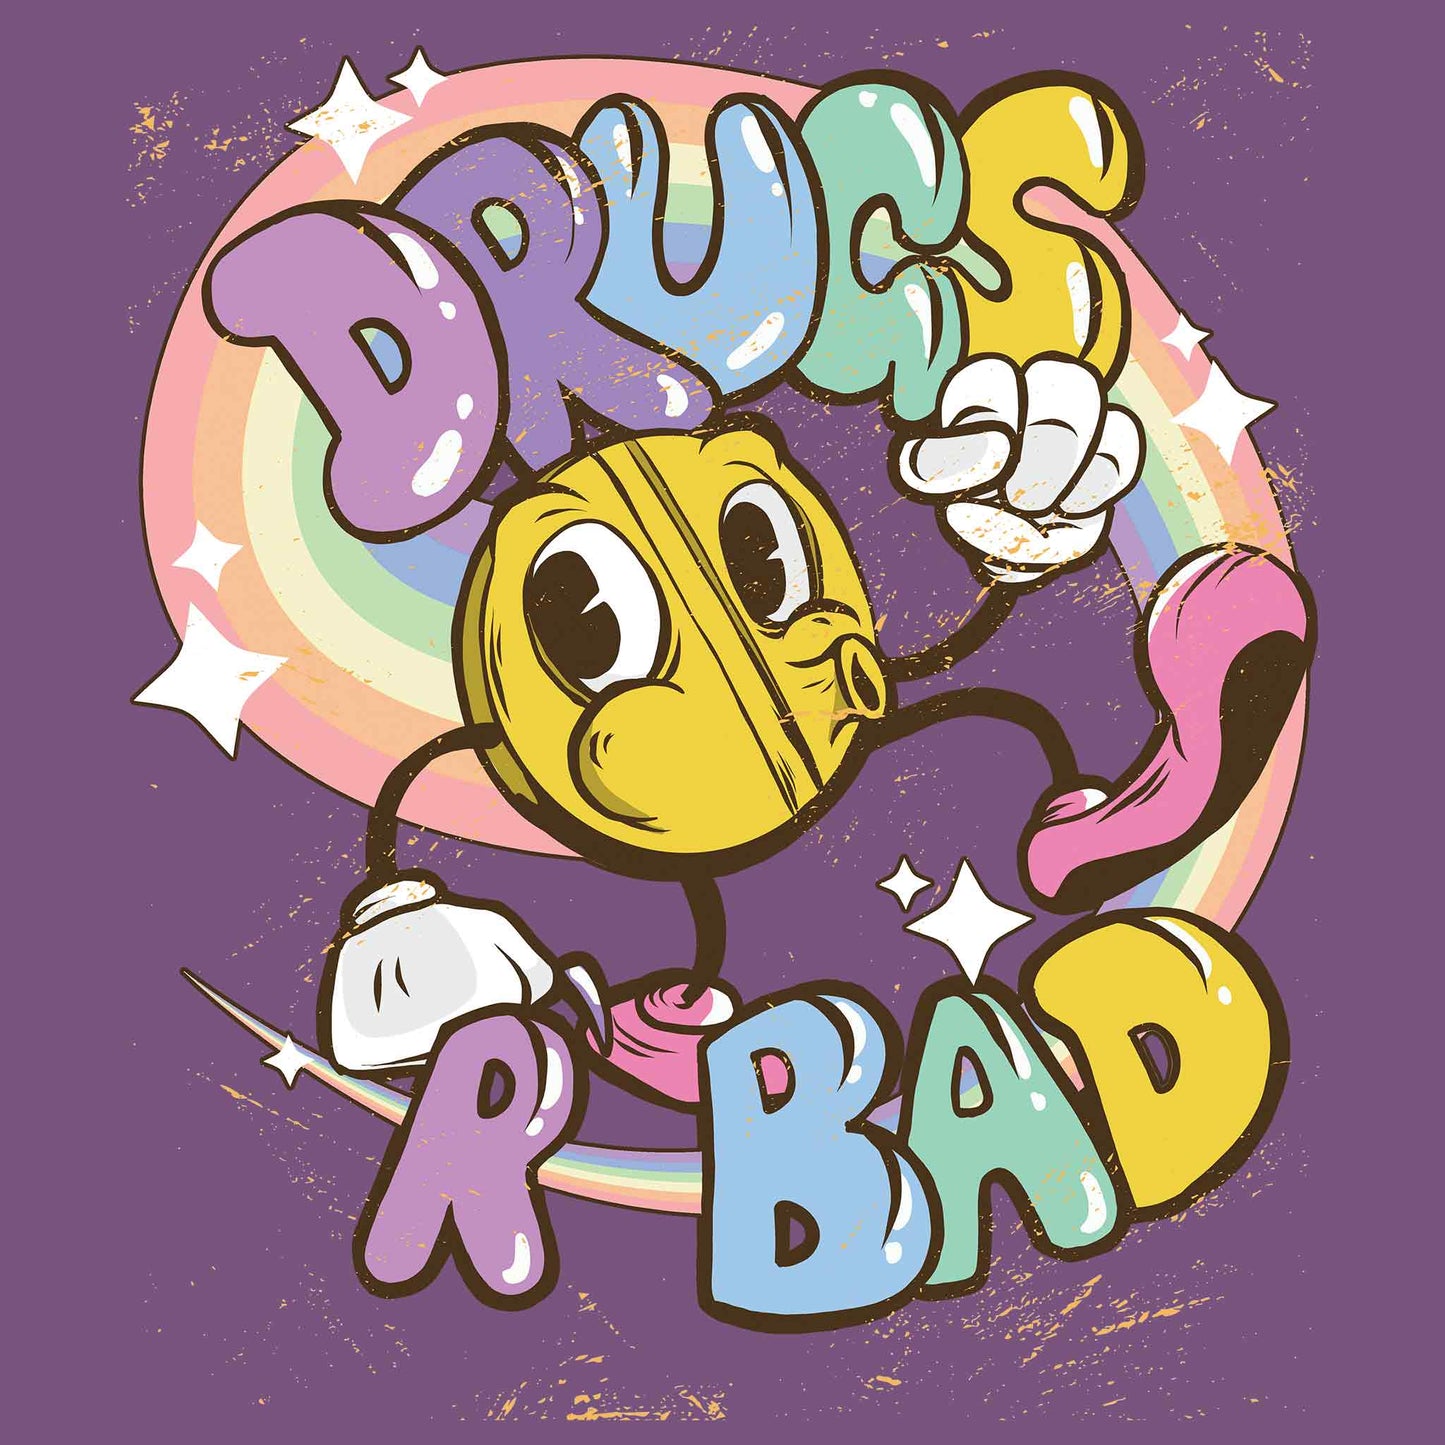 Drugs R Bad T-Shirt